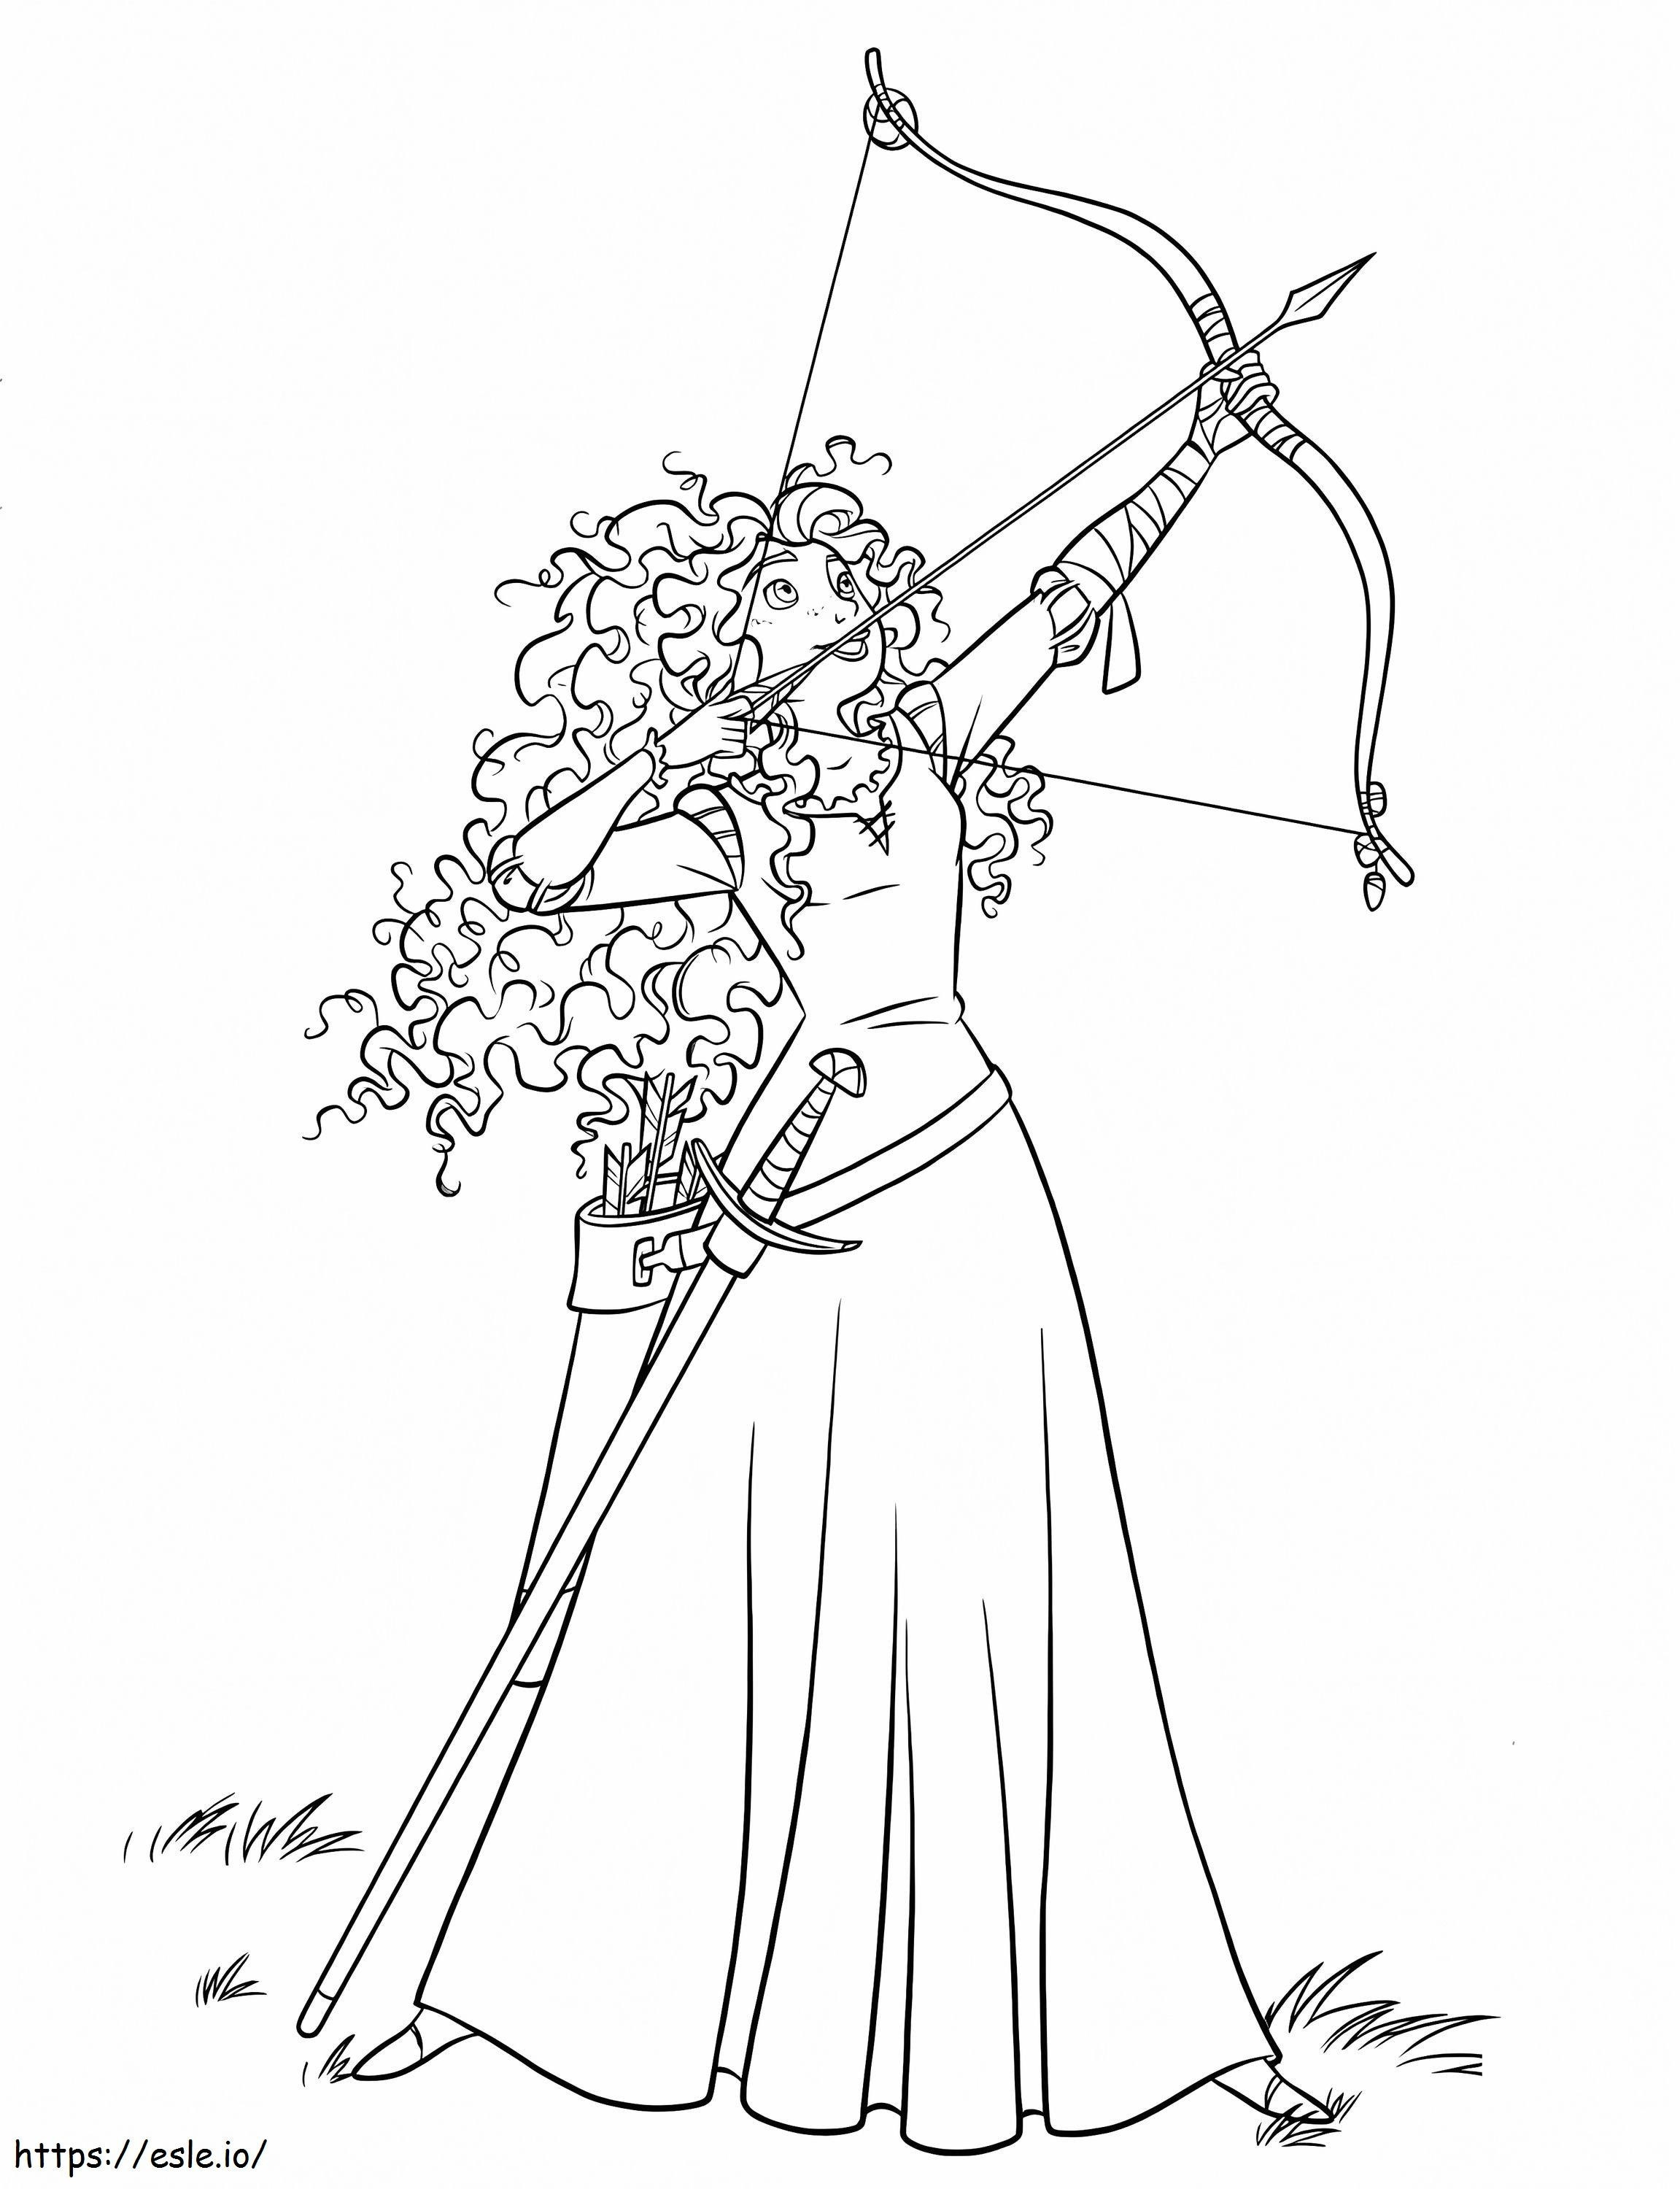 Princesa Mérida com arco e flecha 2 para colorir